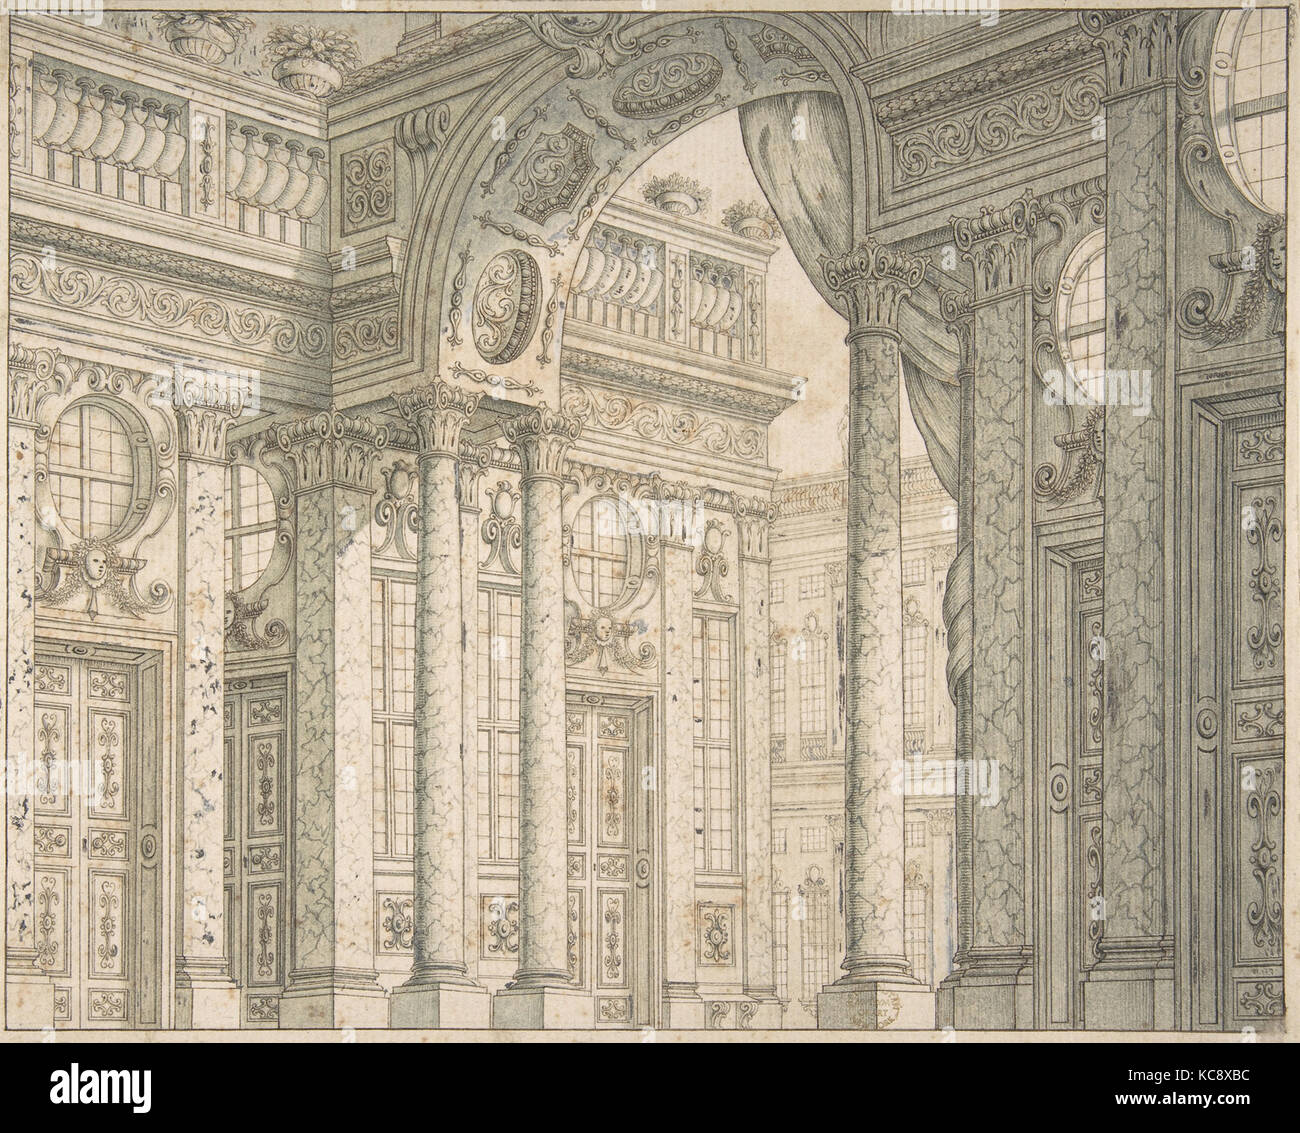 Conception d'une perspective pour une mise en scène avec cour et arc triomphal., Ferdinando Galli Bibiena, 1657-1743 Banque D'Images